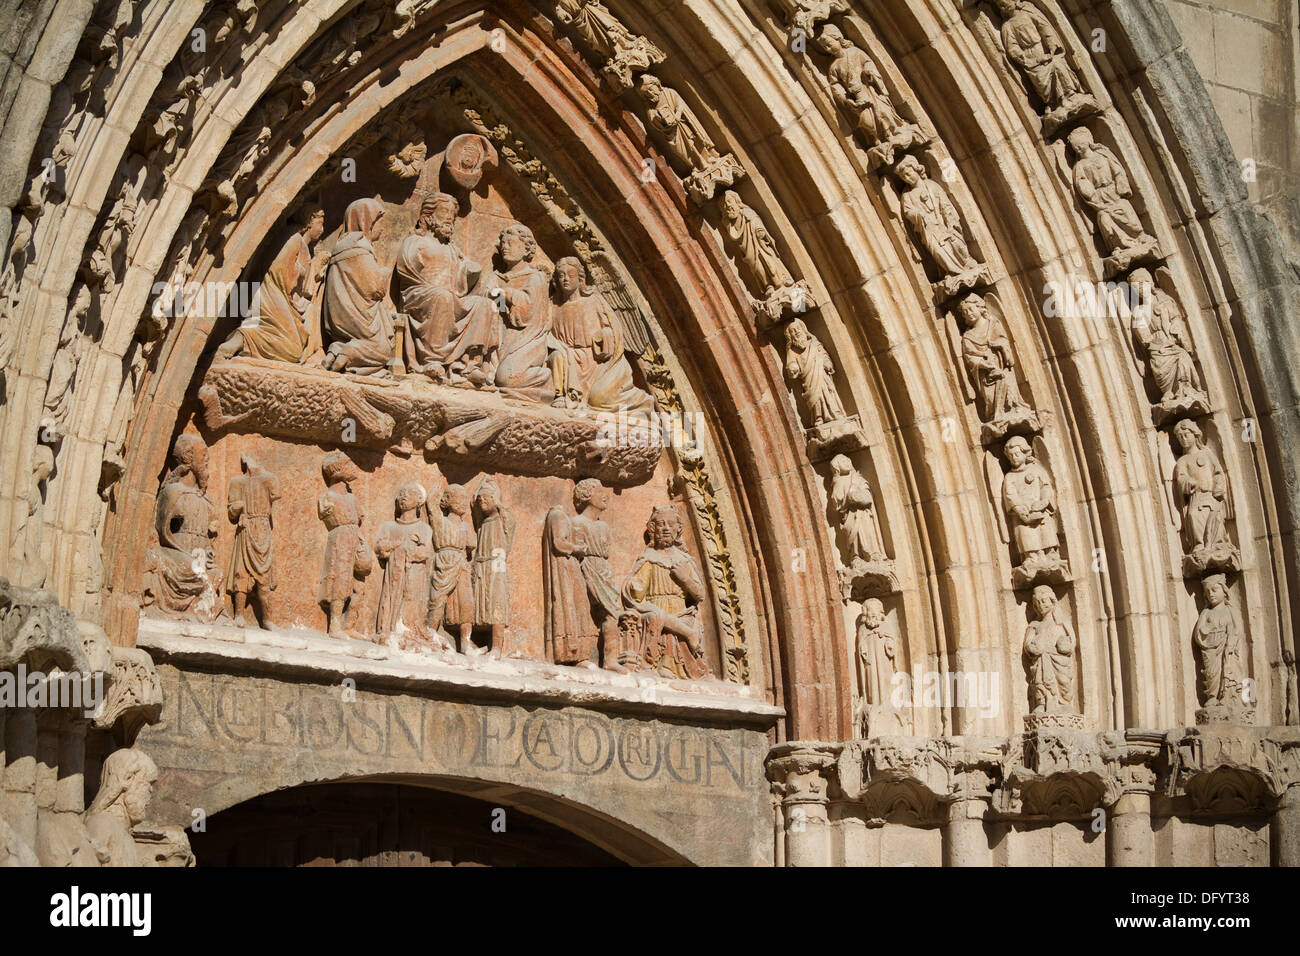 Détail de tympan dans l''église San Esteban, Burgos, Castille et Leon. Espagne Banque D'Images